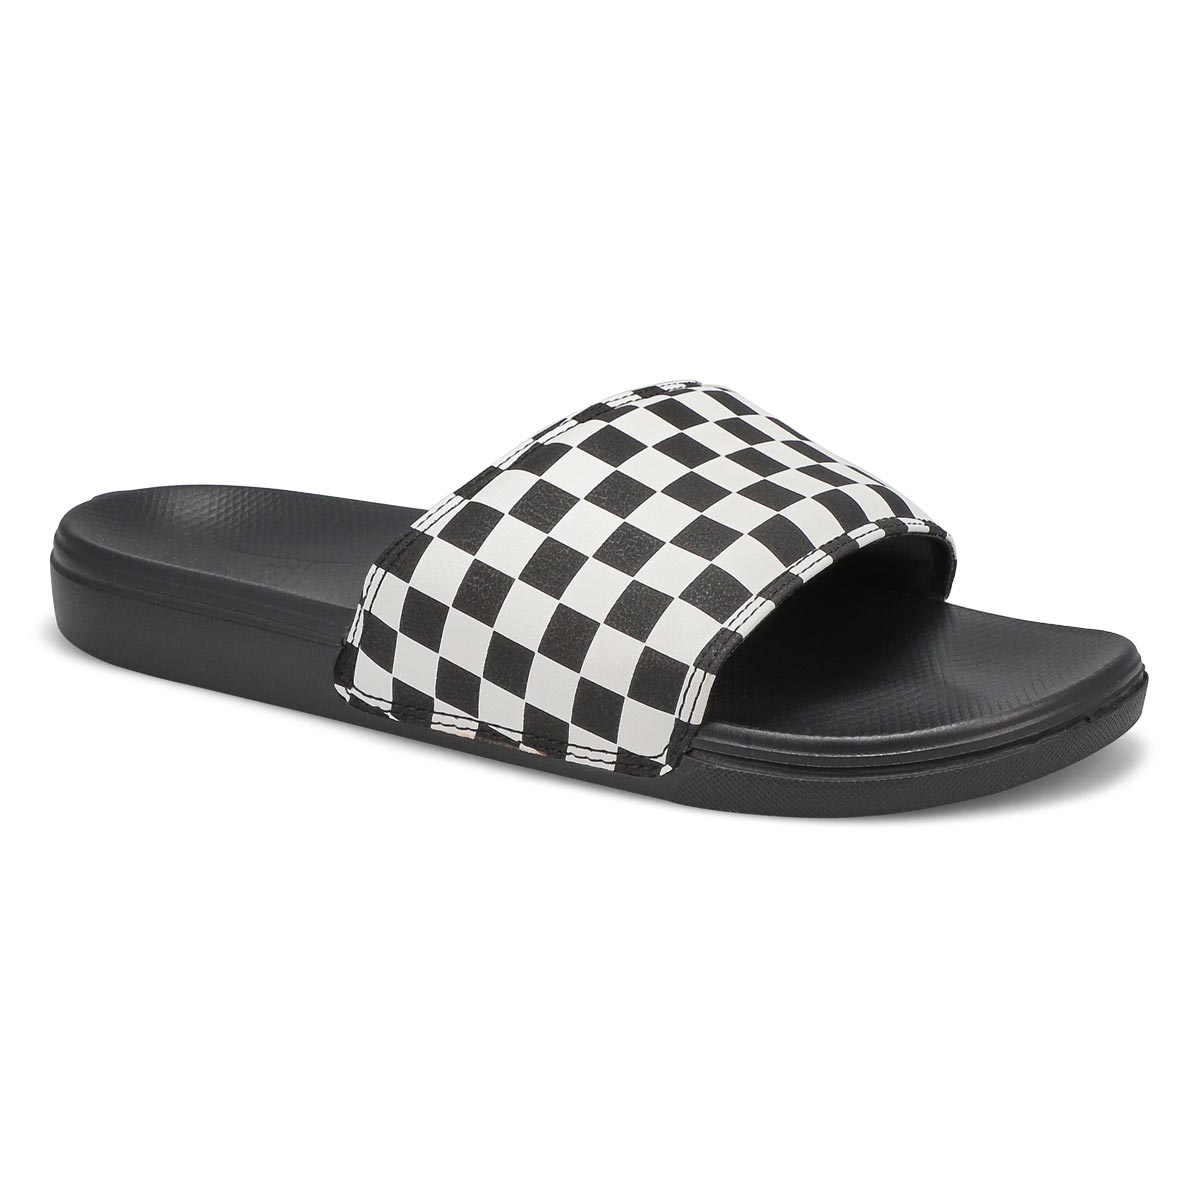 Men's Range Slide-On Slide Sandal - Black/White